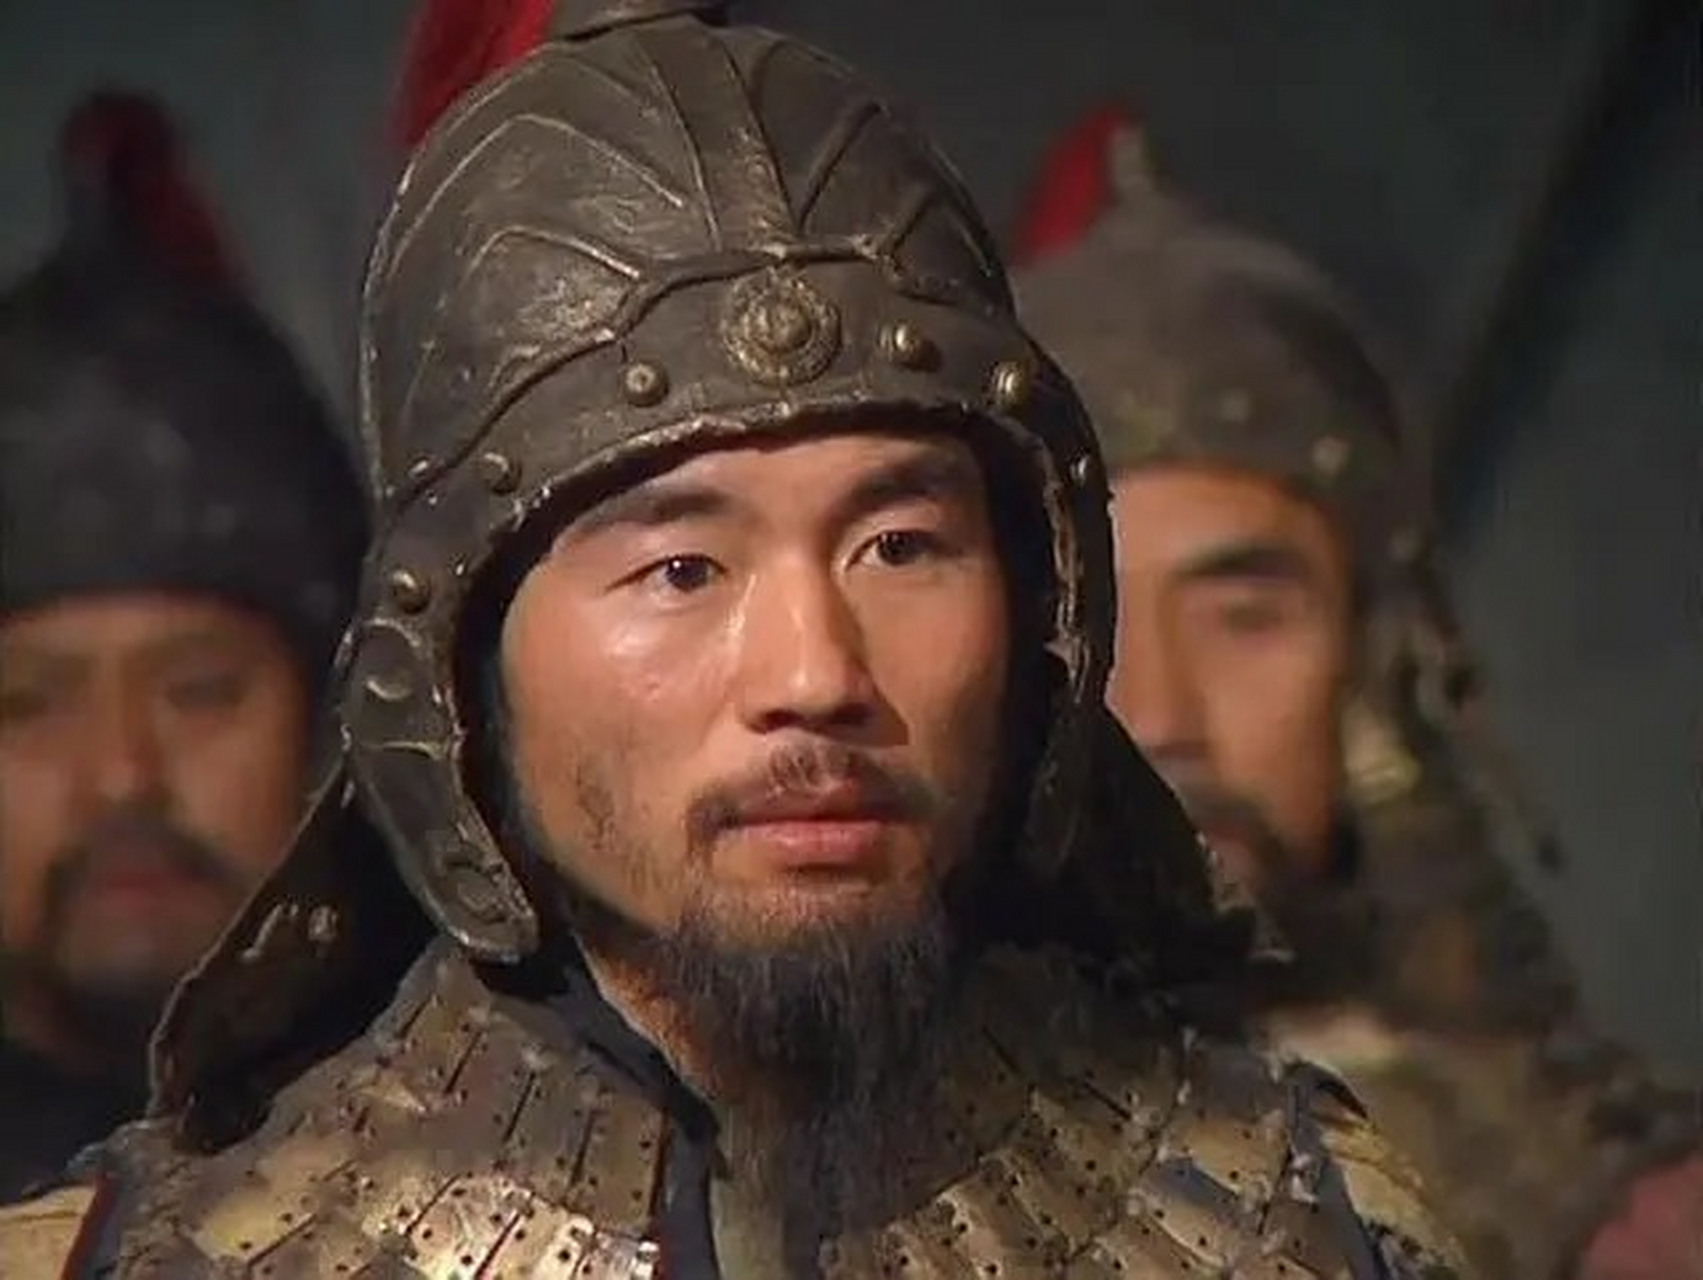 曹操听说毛玠在背后骂他,勃然大怒,将毛玠关进大牢.